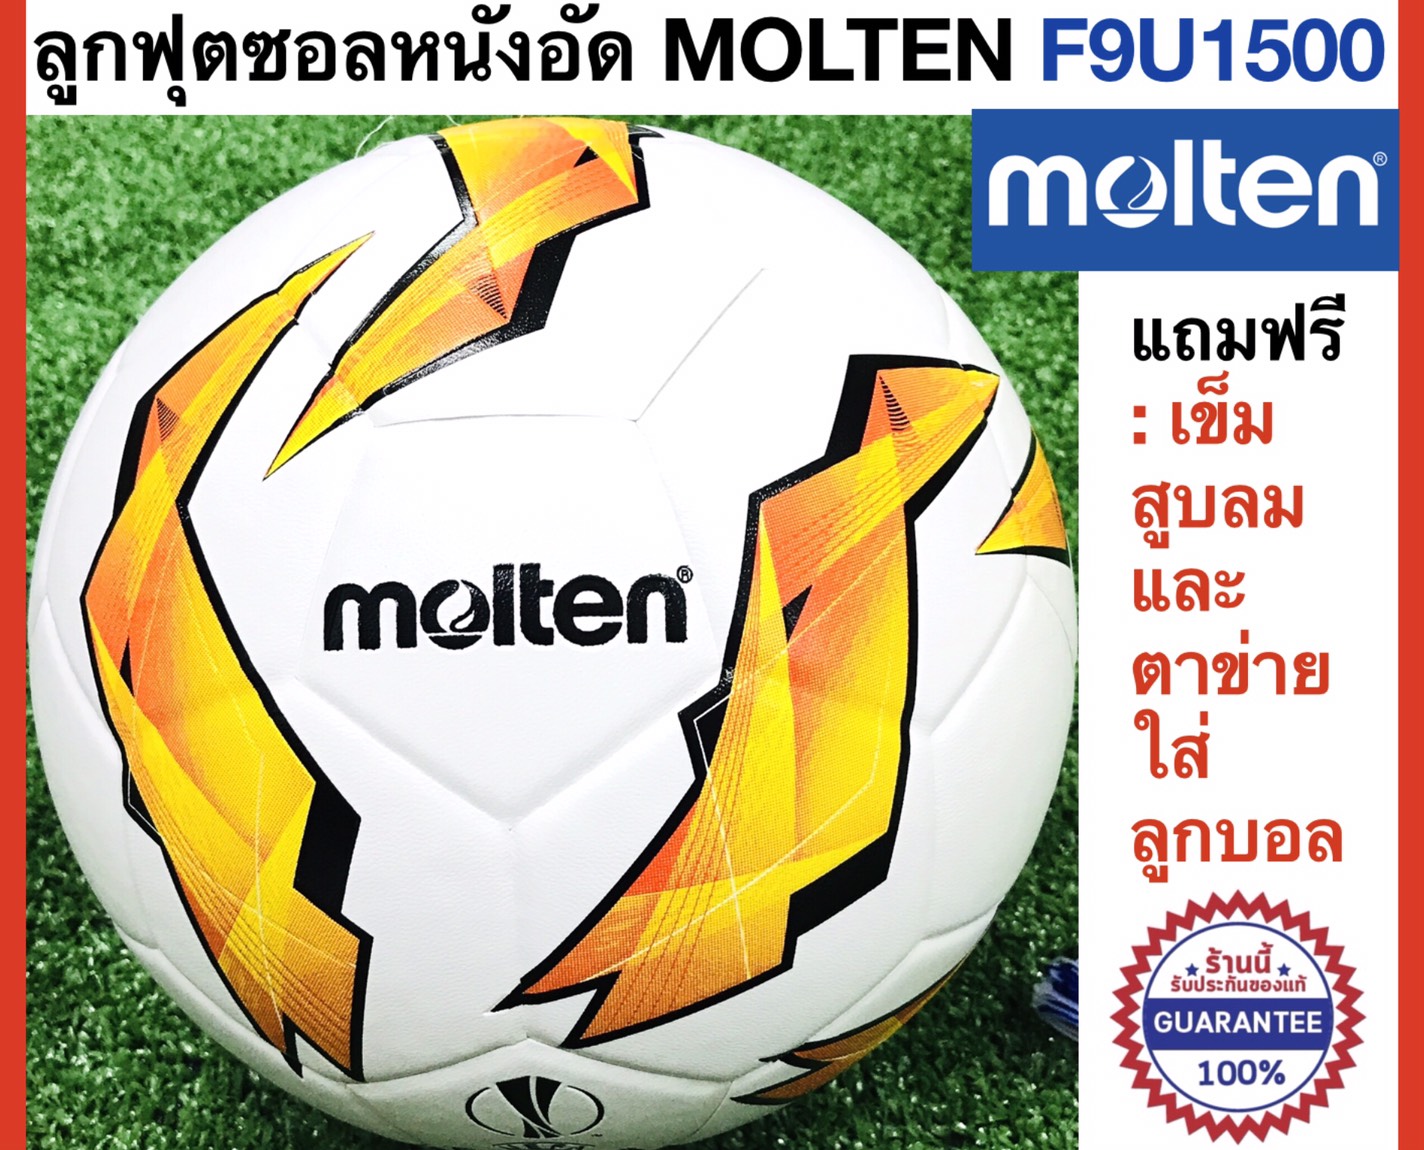 Molten ลูกฟุตซอลมอลเท่น หนังอัด รุ่น F9U1500 ของแท้ แถมฟรี : เข็มสูบและตาข่ายใส่บอล